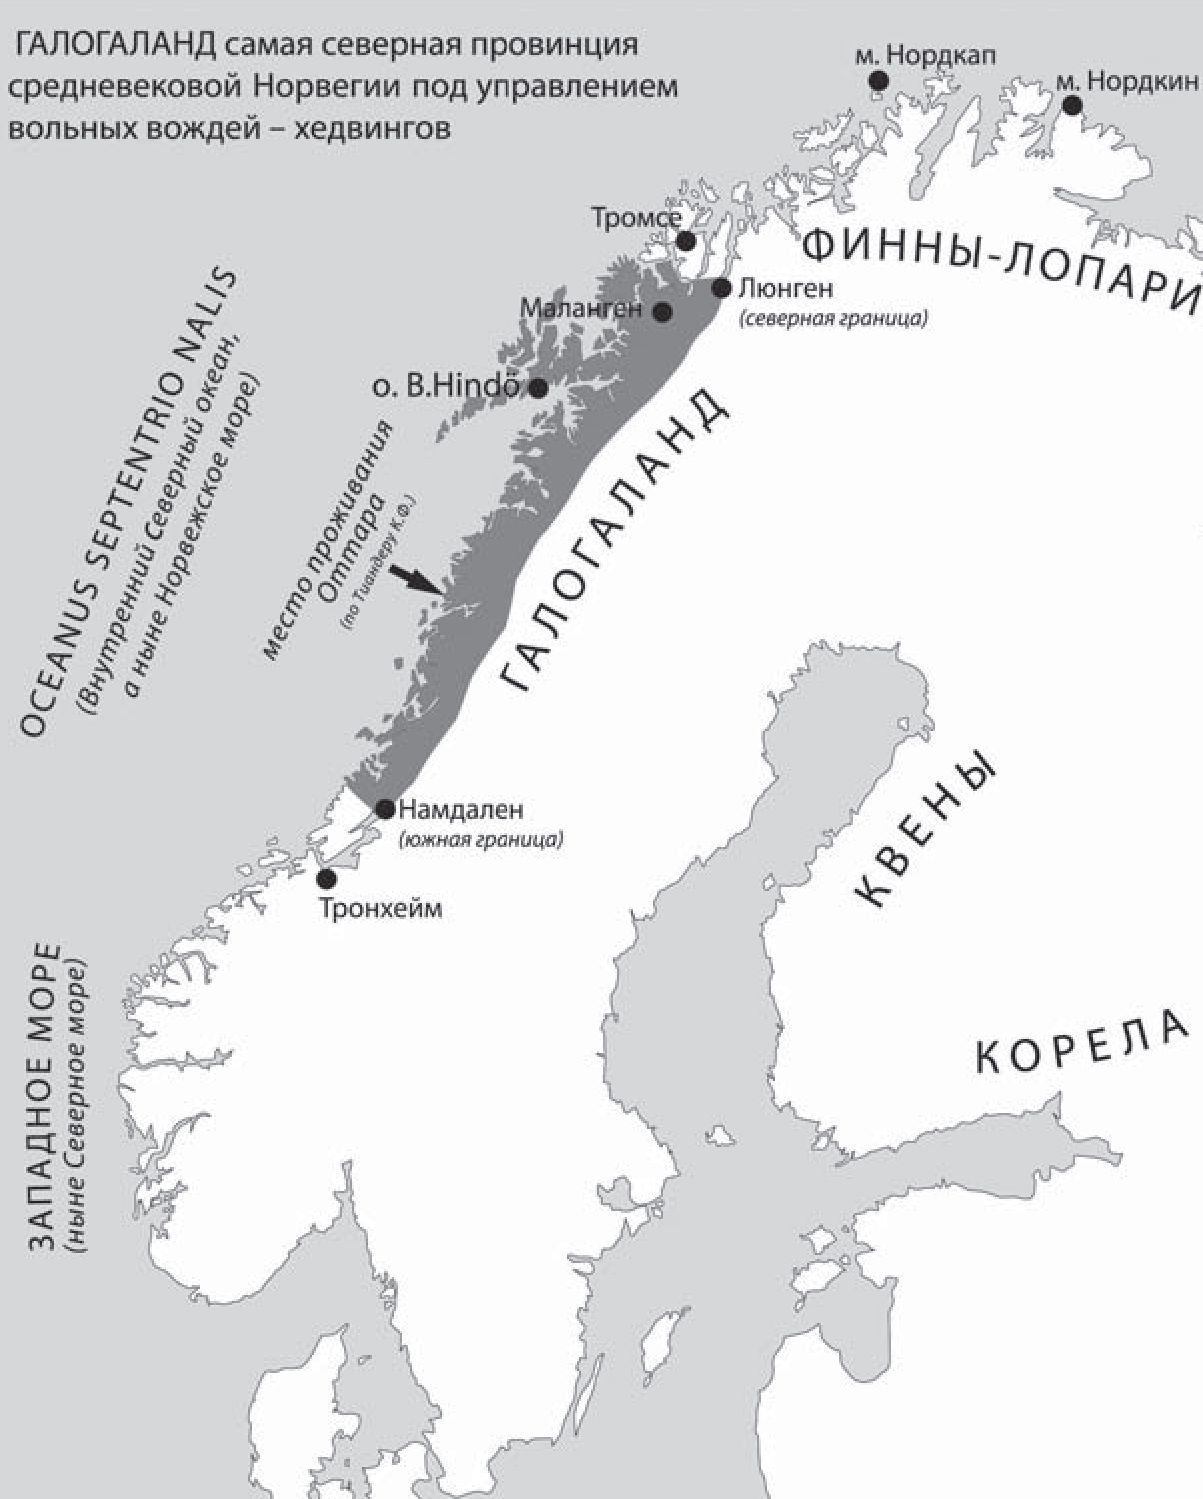 Норвежская провинция Галогаланд (Halogaland). Галогаланд — самая северная провинция средневековой Норвегии под управлением вольных вождей — хедвингов